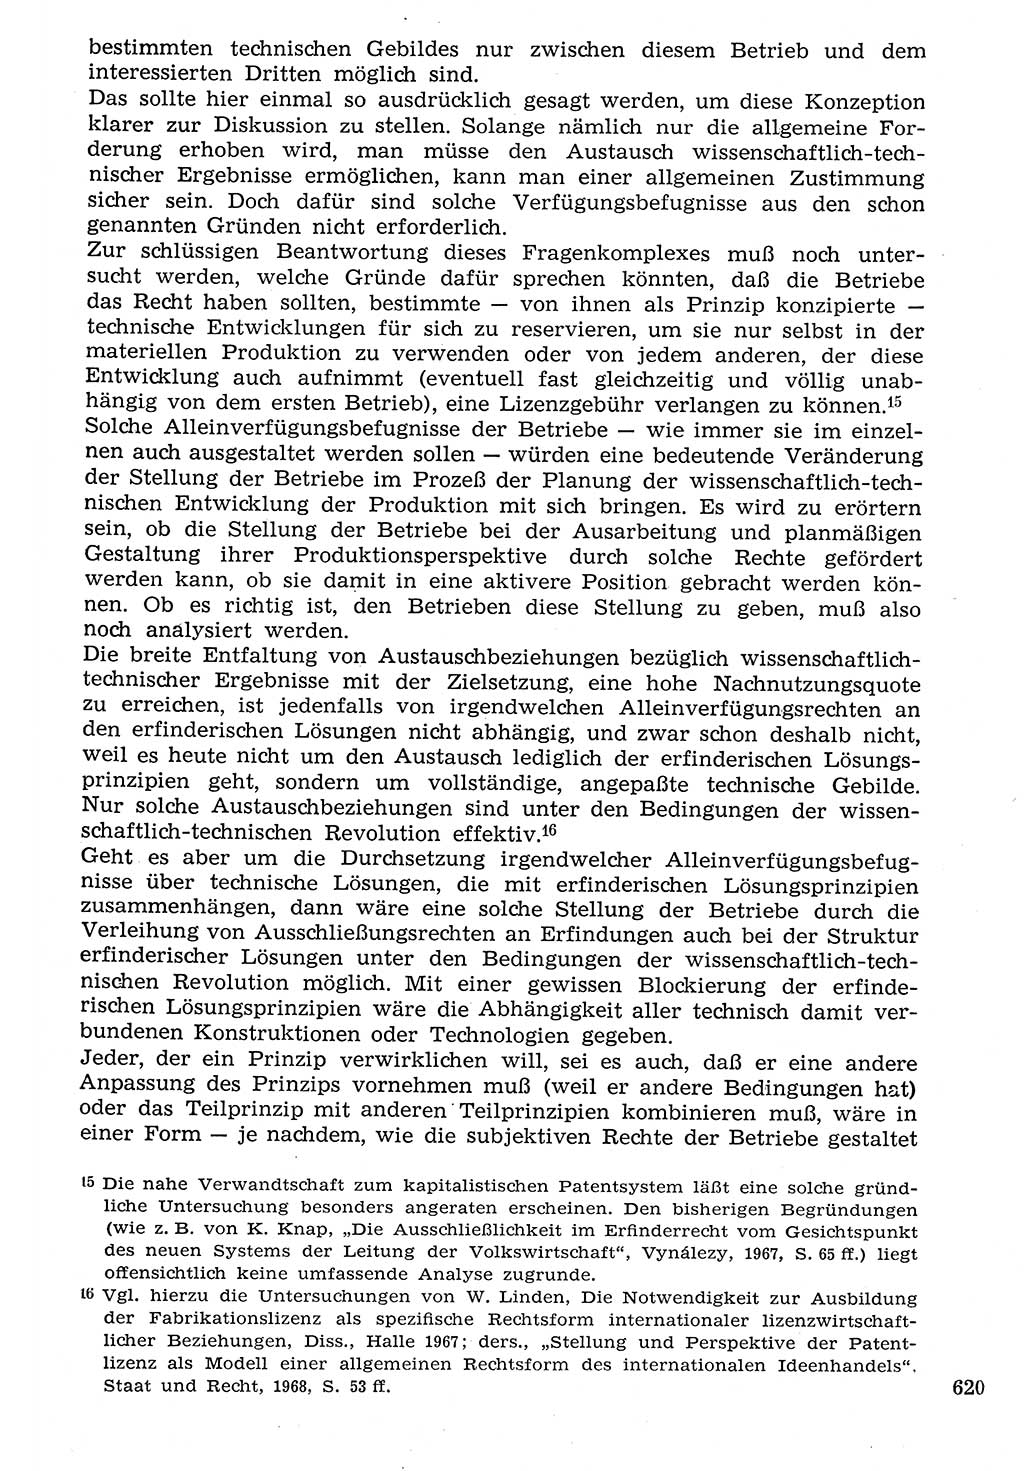 Staat und Recht (StuR), 17. Jahrgang [Deutsche Demokratische Republik (DDR)] 1968, Seite 620 (StuR DDR 1968, S. 620)